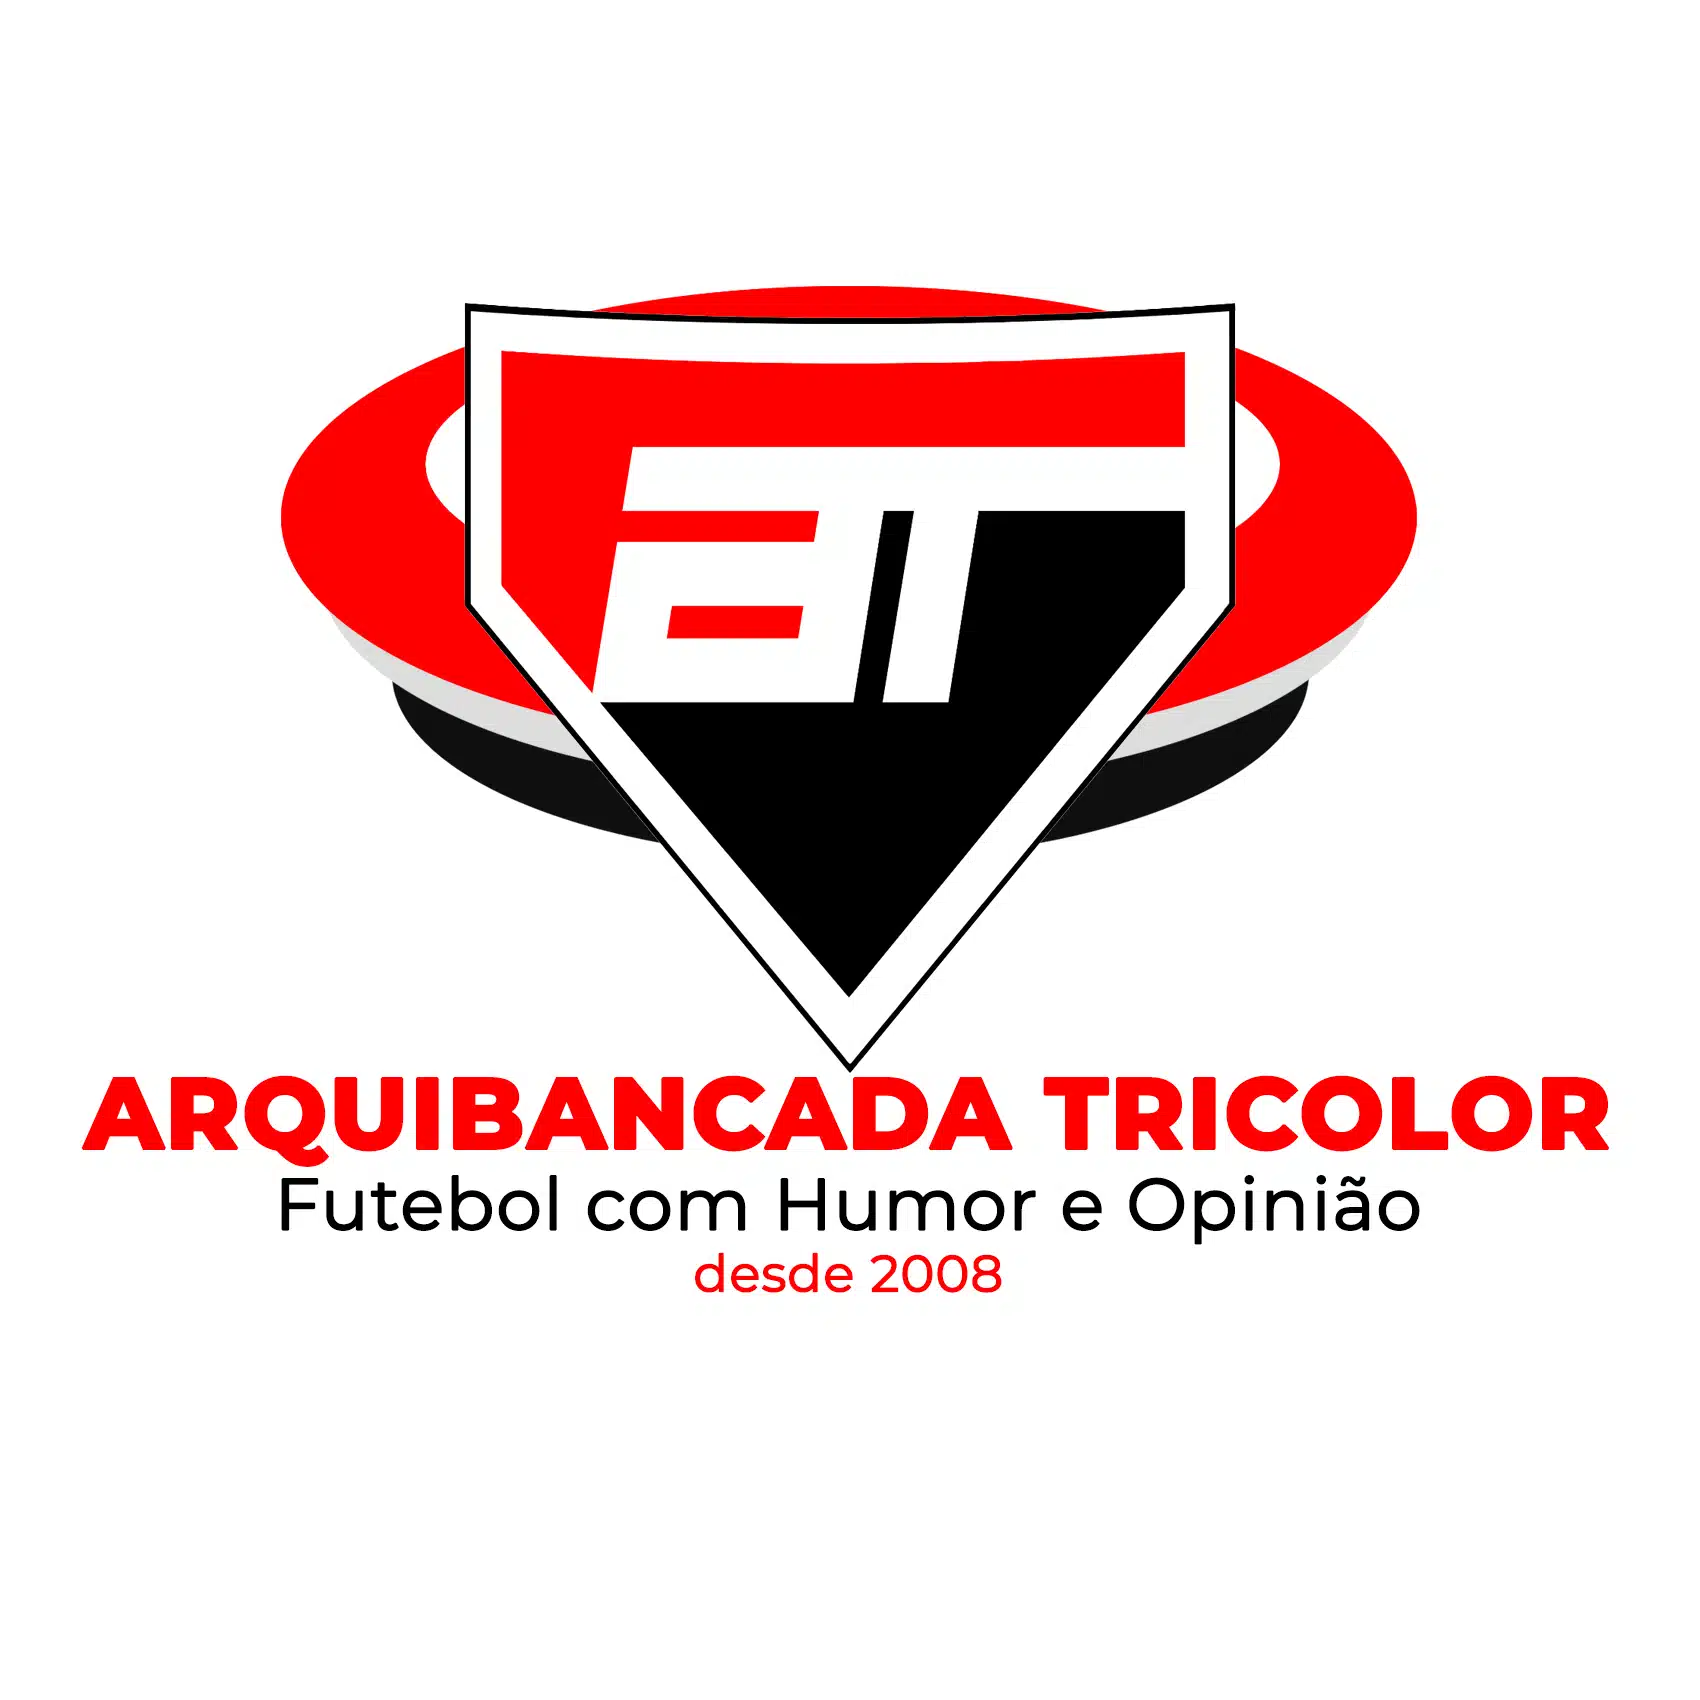 AT - Arquibancada Tricolor